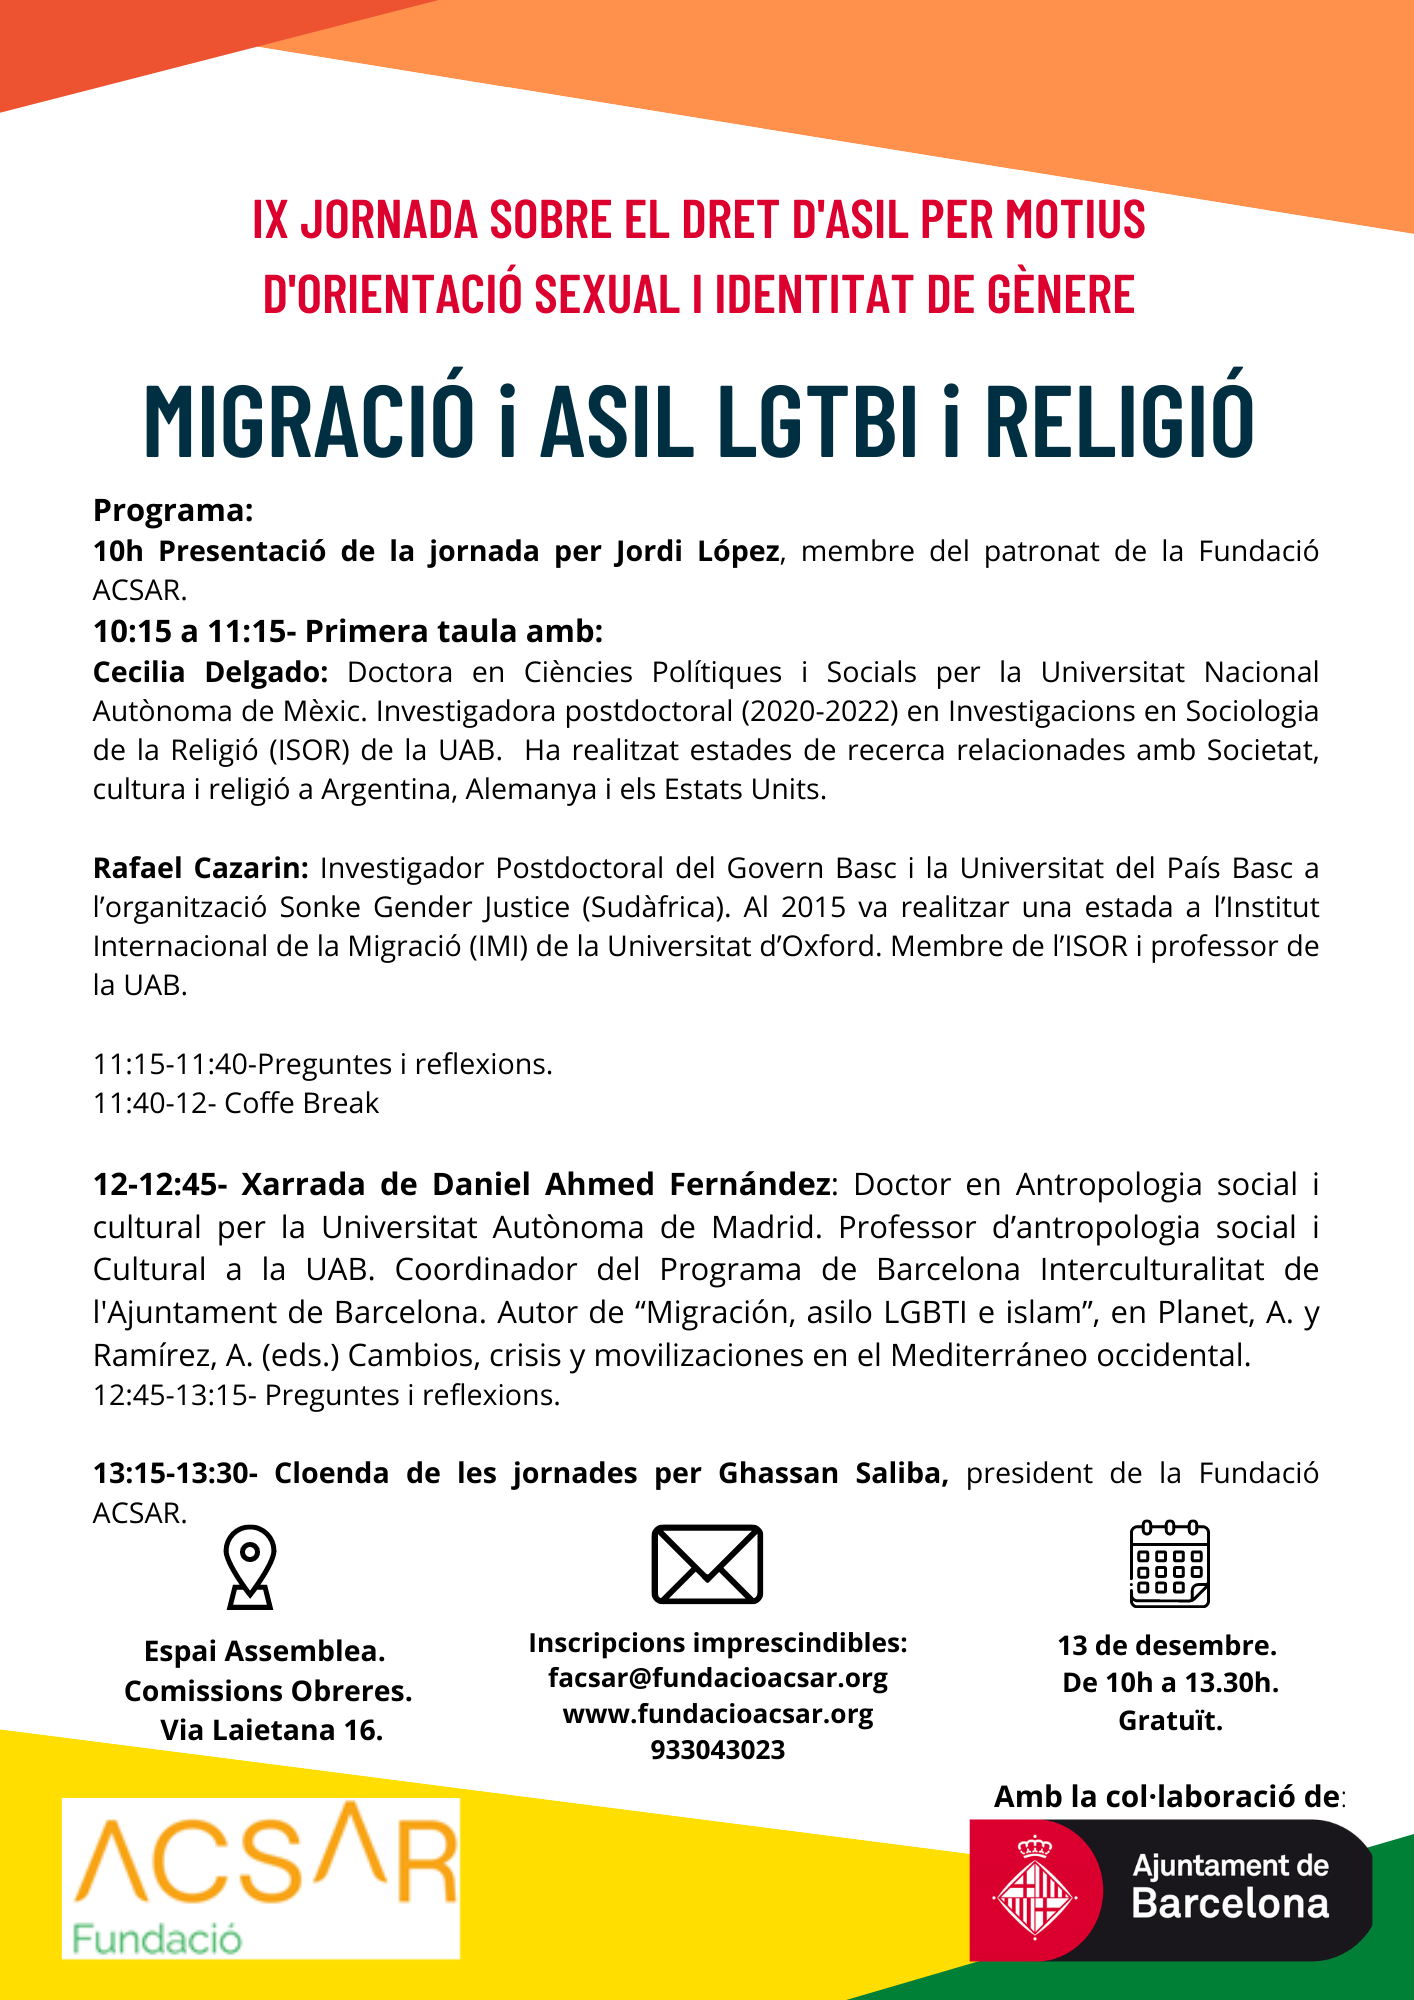 La Fundación ACSAR organiza la IX jornada sobre el derecho de asilo por motivos de orientación sexual e identidad de género